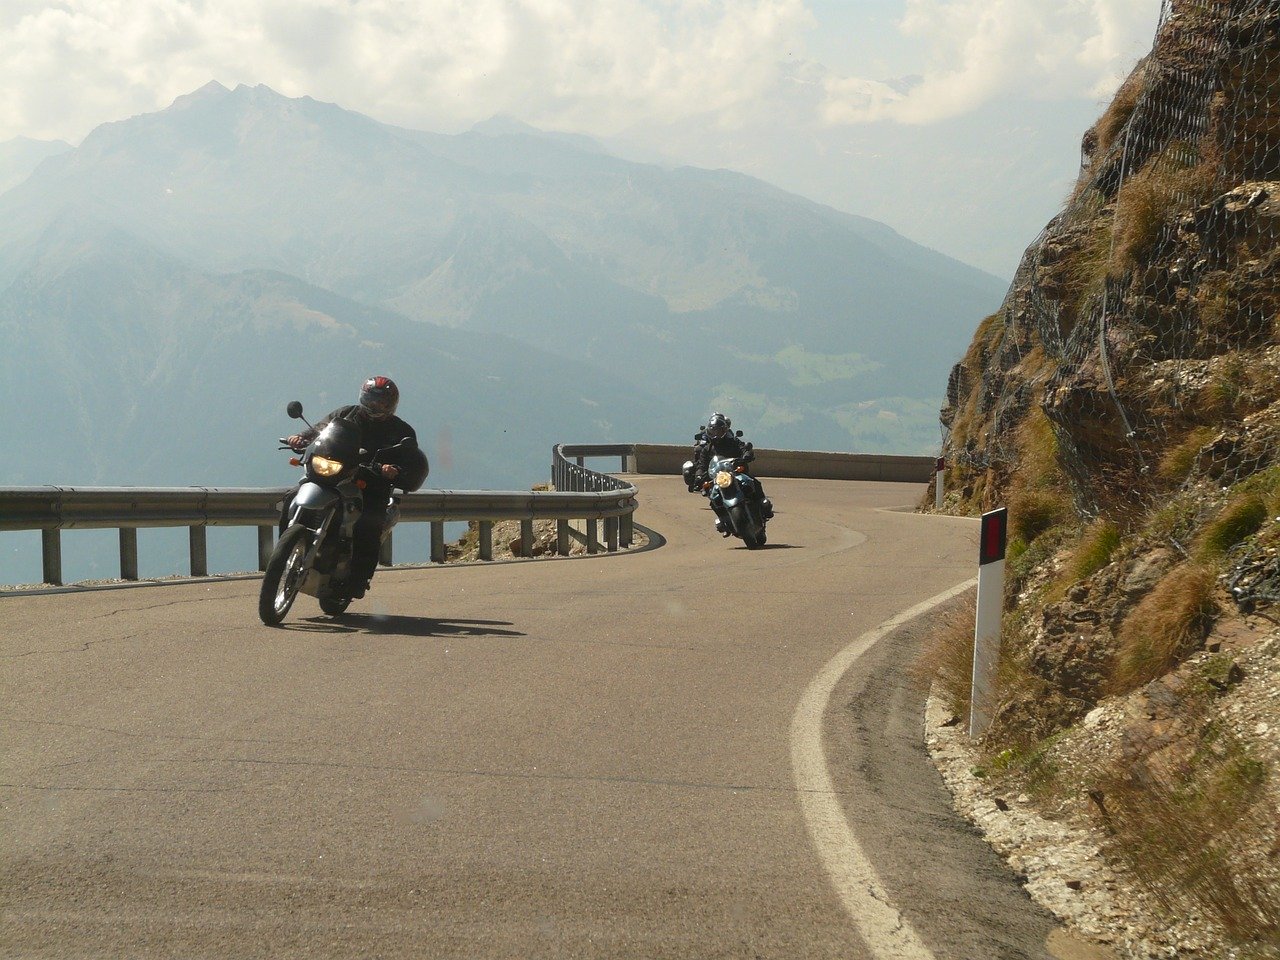 motorcycle riders cruising highway side